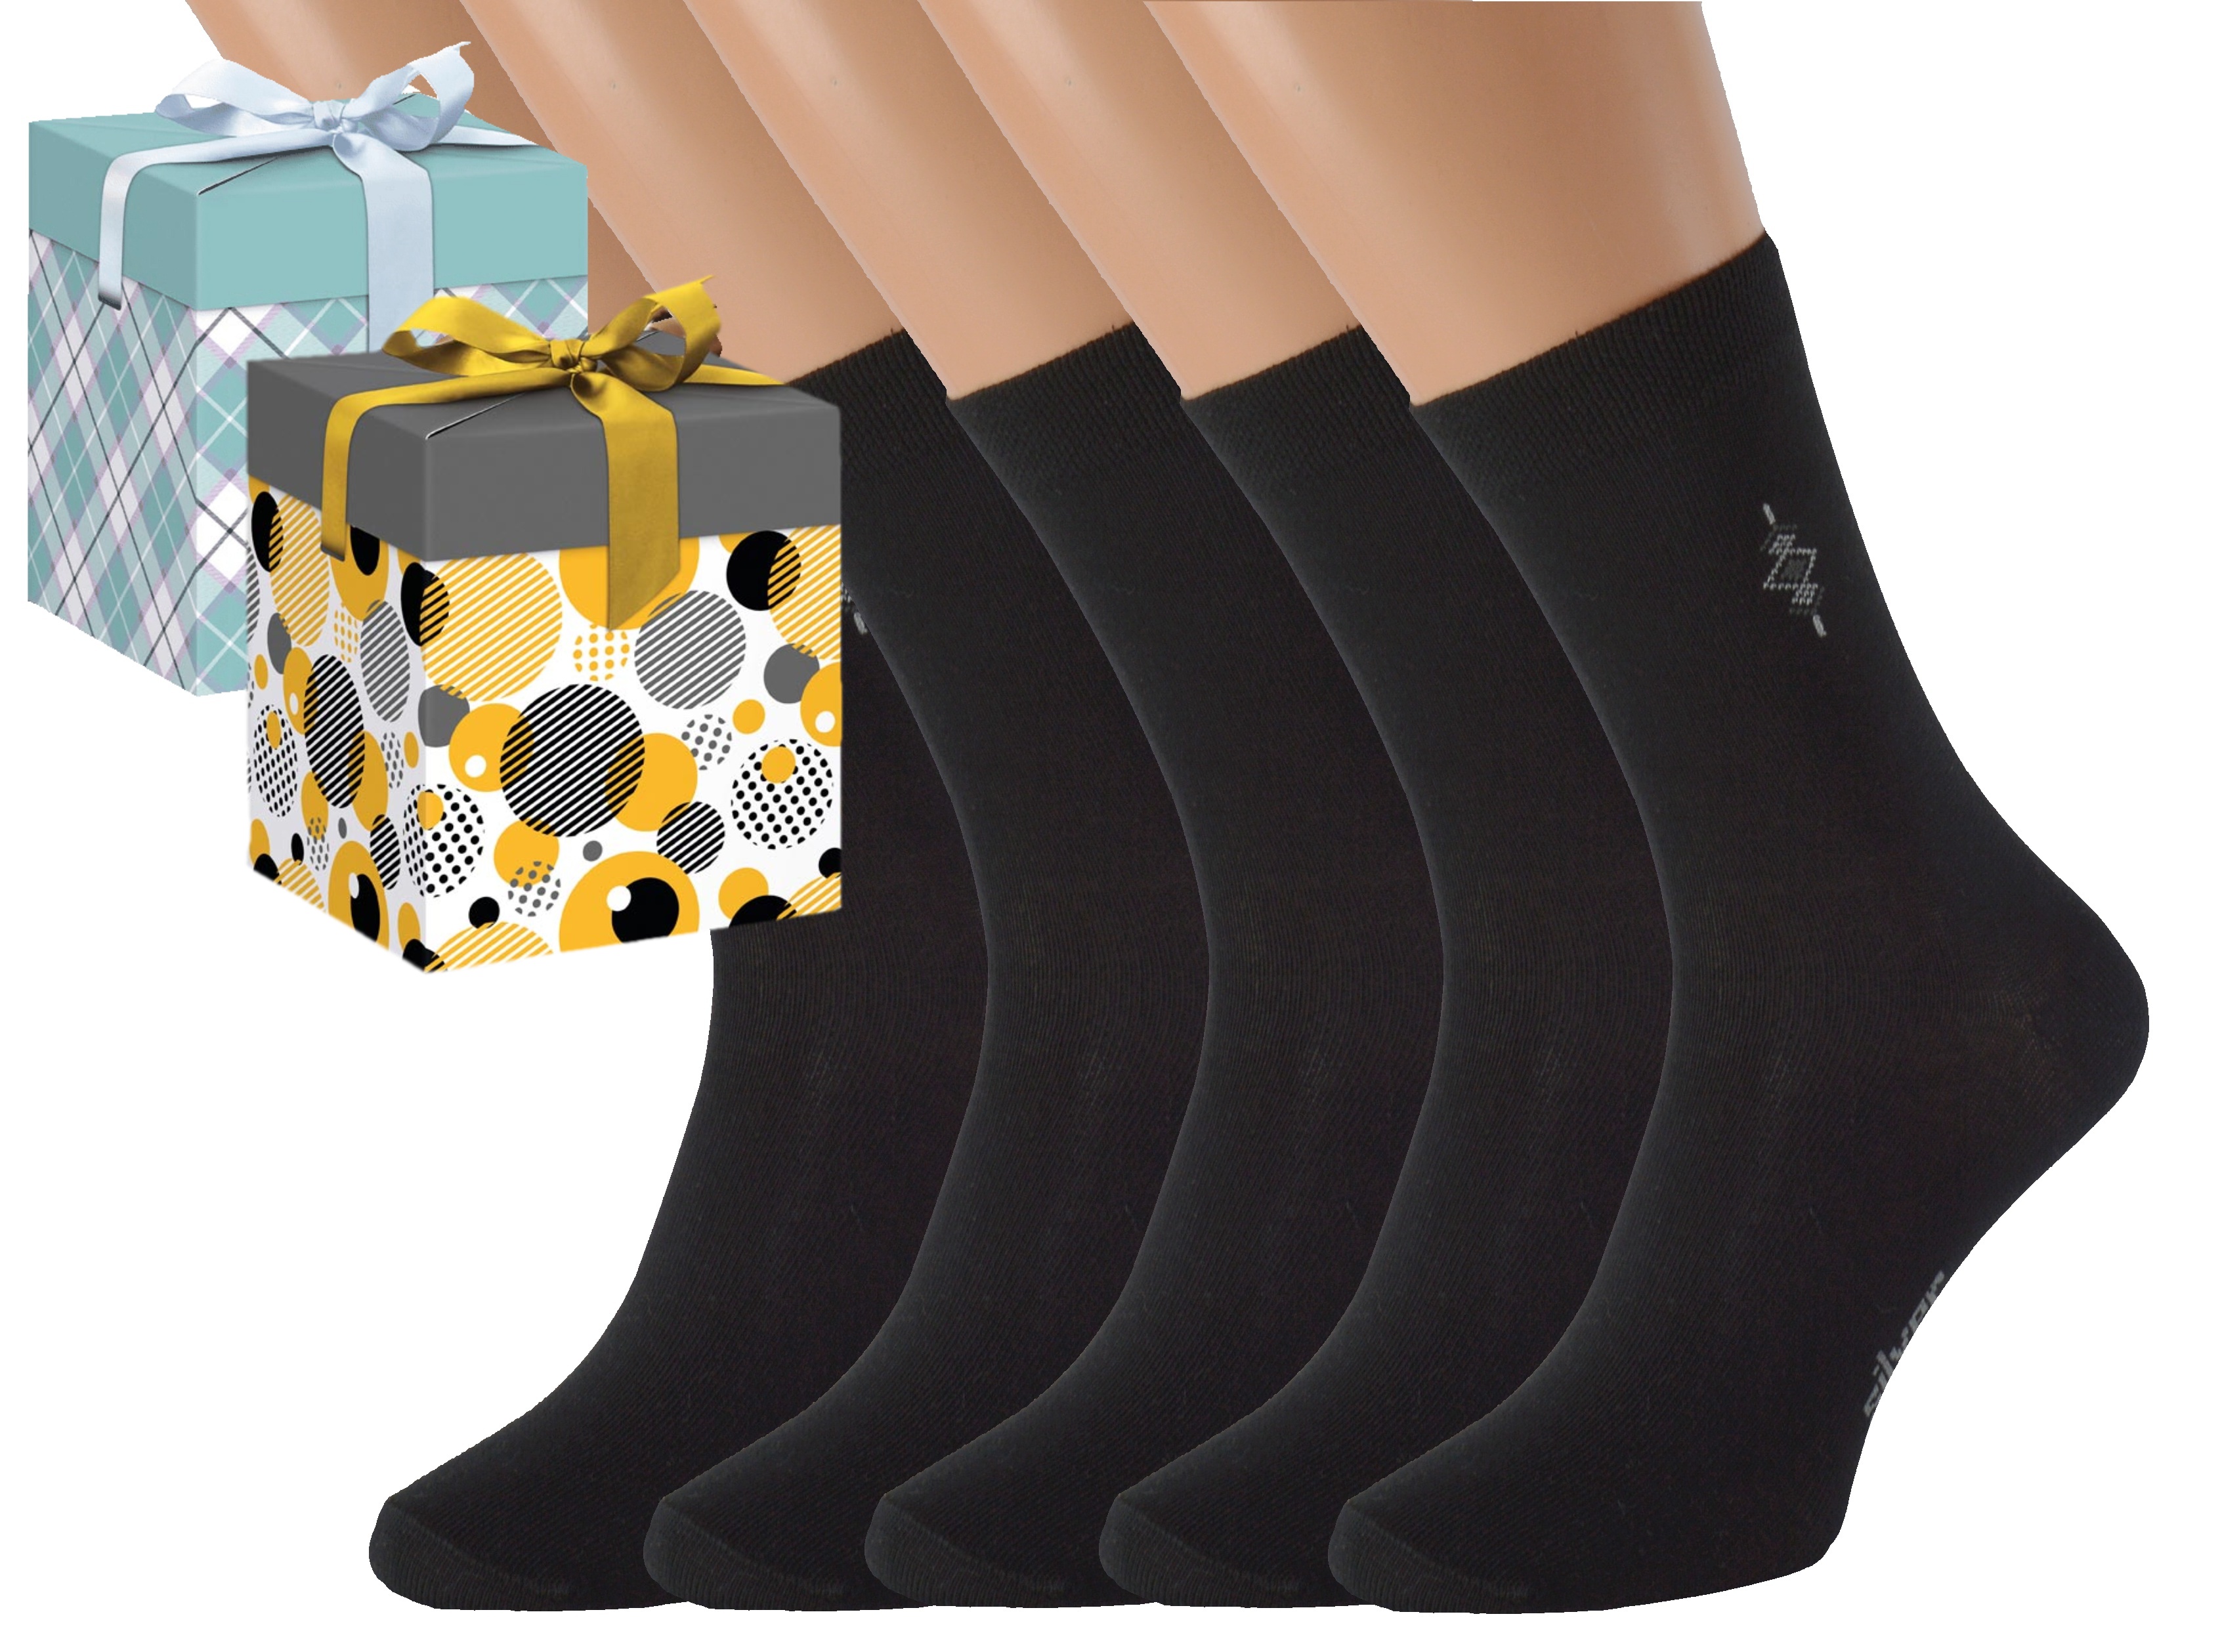 Dárkové balení 5 párů společenských ponožek BOBOLYC Barva: Černé, Velikost: EUR 39-42 (UK 6-8), Zvolte variantu dárkového balení: Modrá s oky